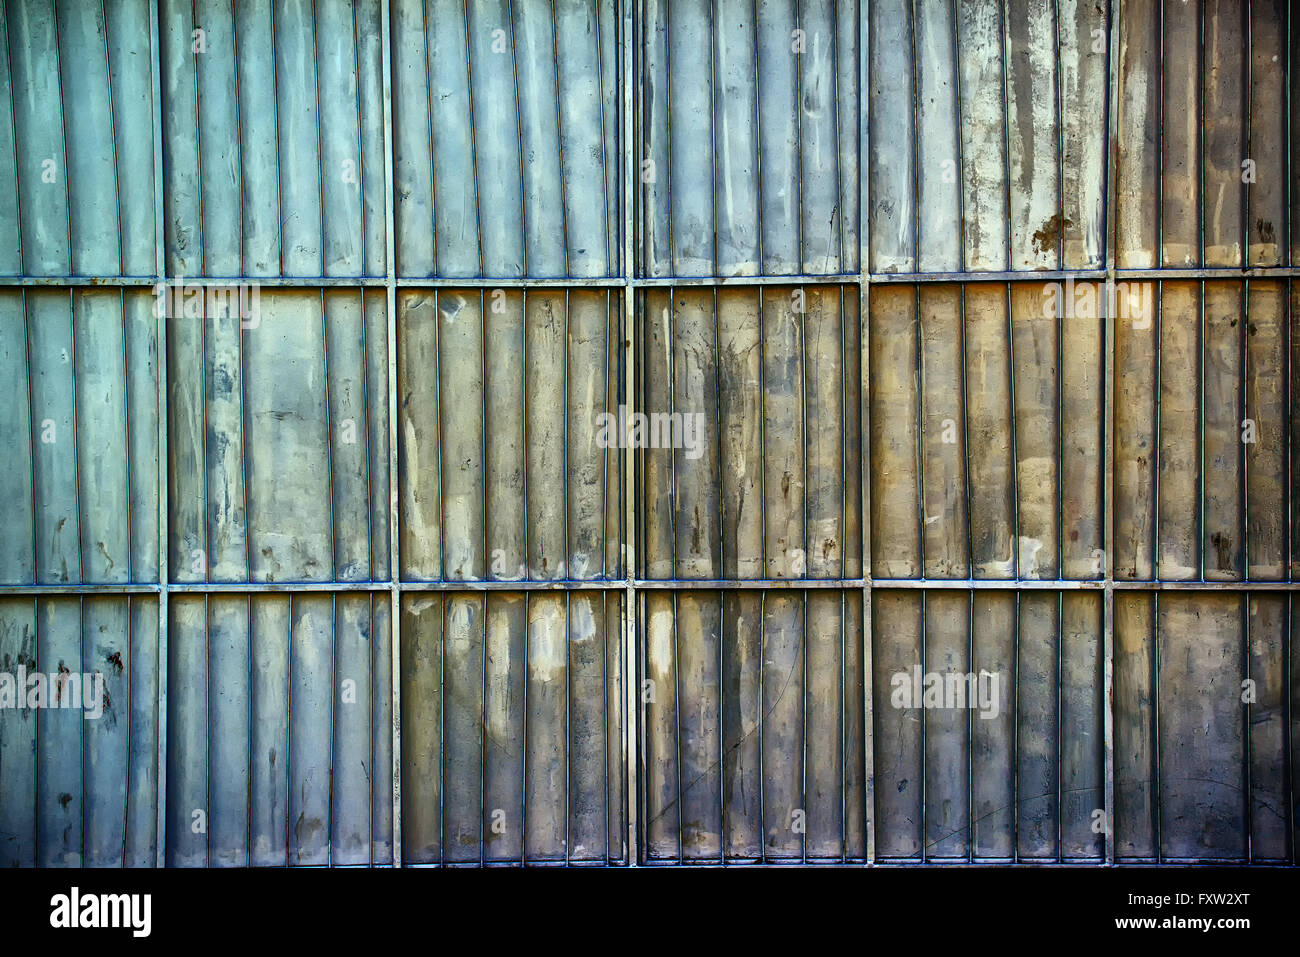 Rusty metal aluminium oxydé garage chormé mur, la texture de la surface métallique avec des barres d'armature verticale et horizontale Banque D'Images